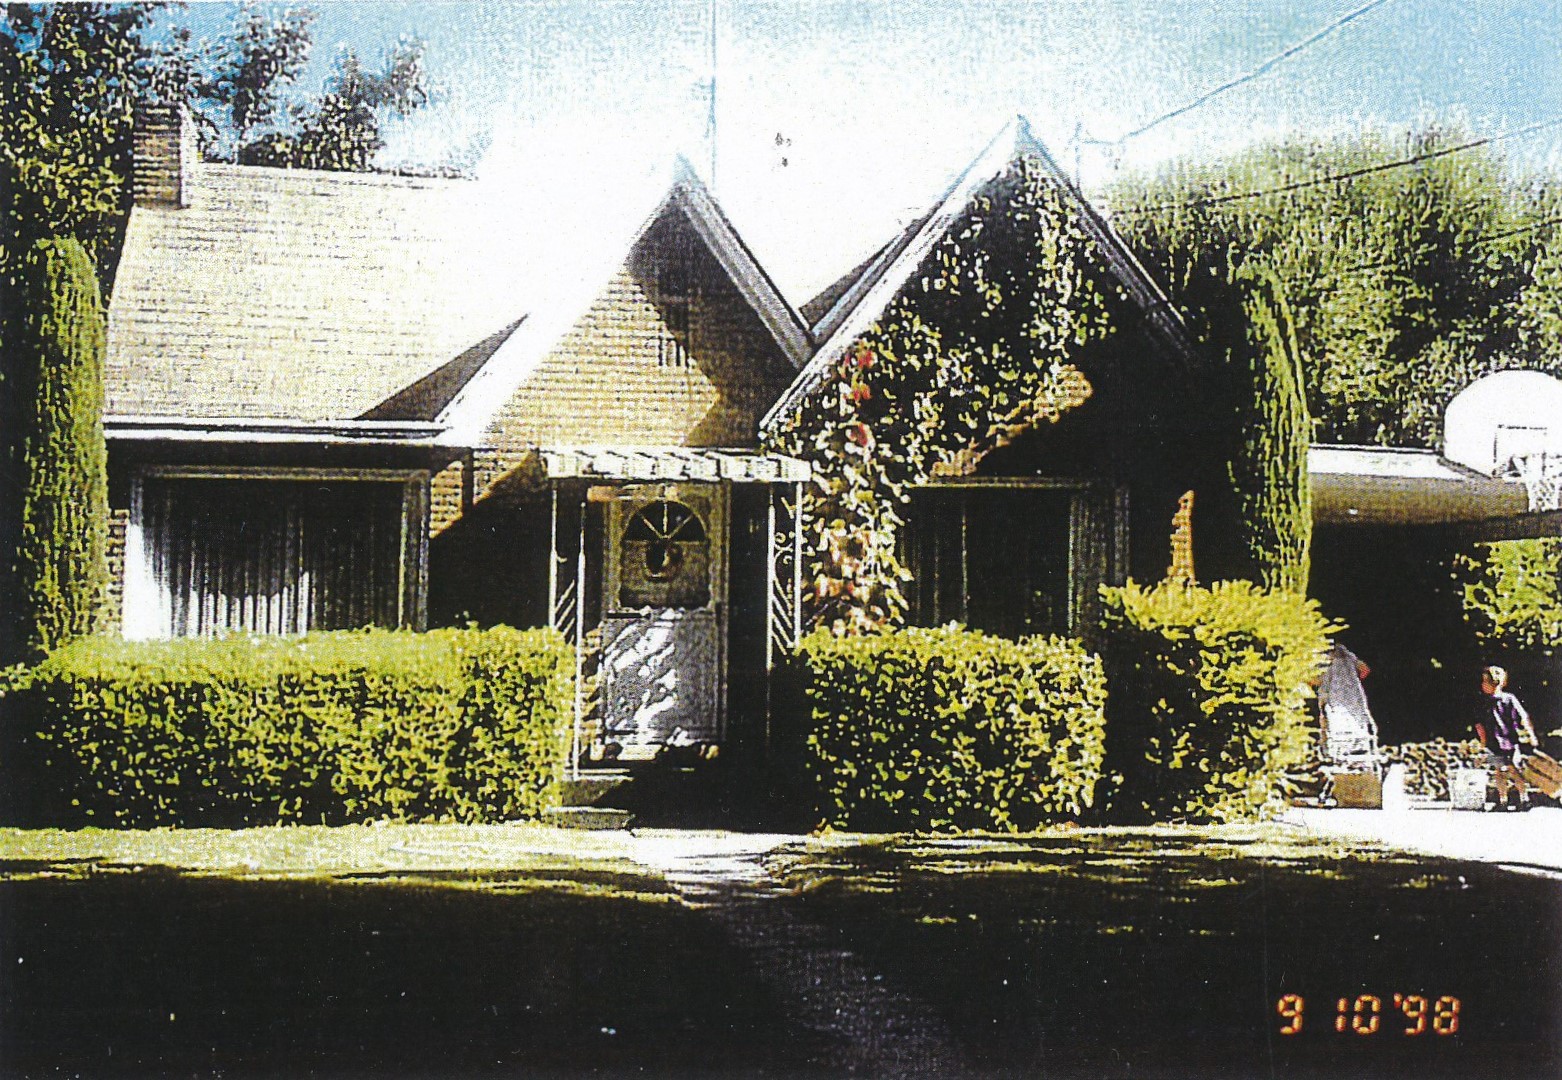 The Elgin & Vivian Graff home on September 10, 1998